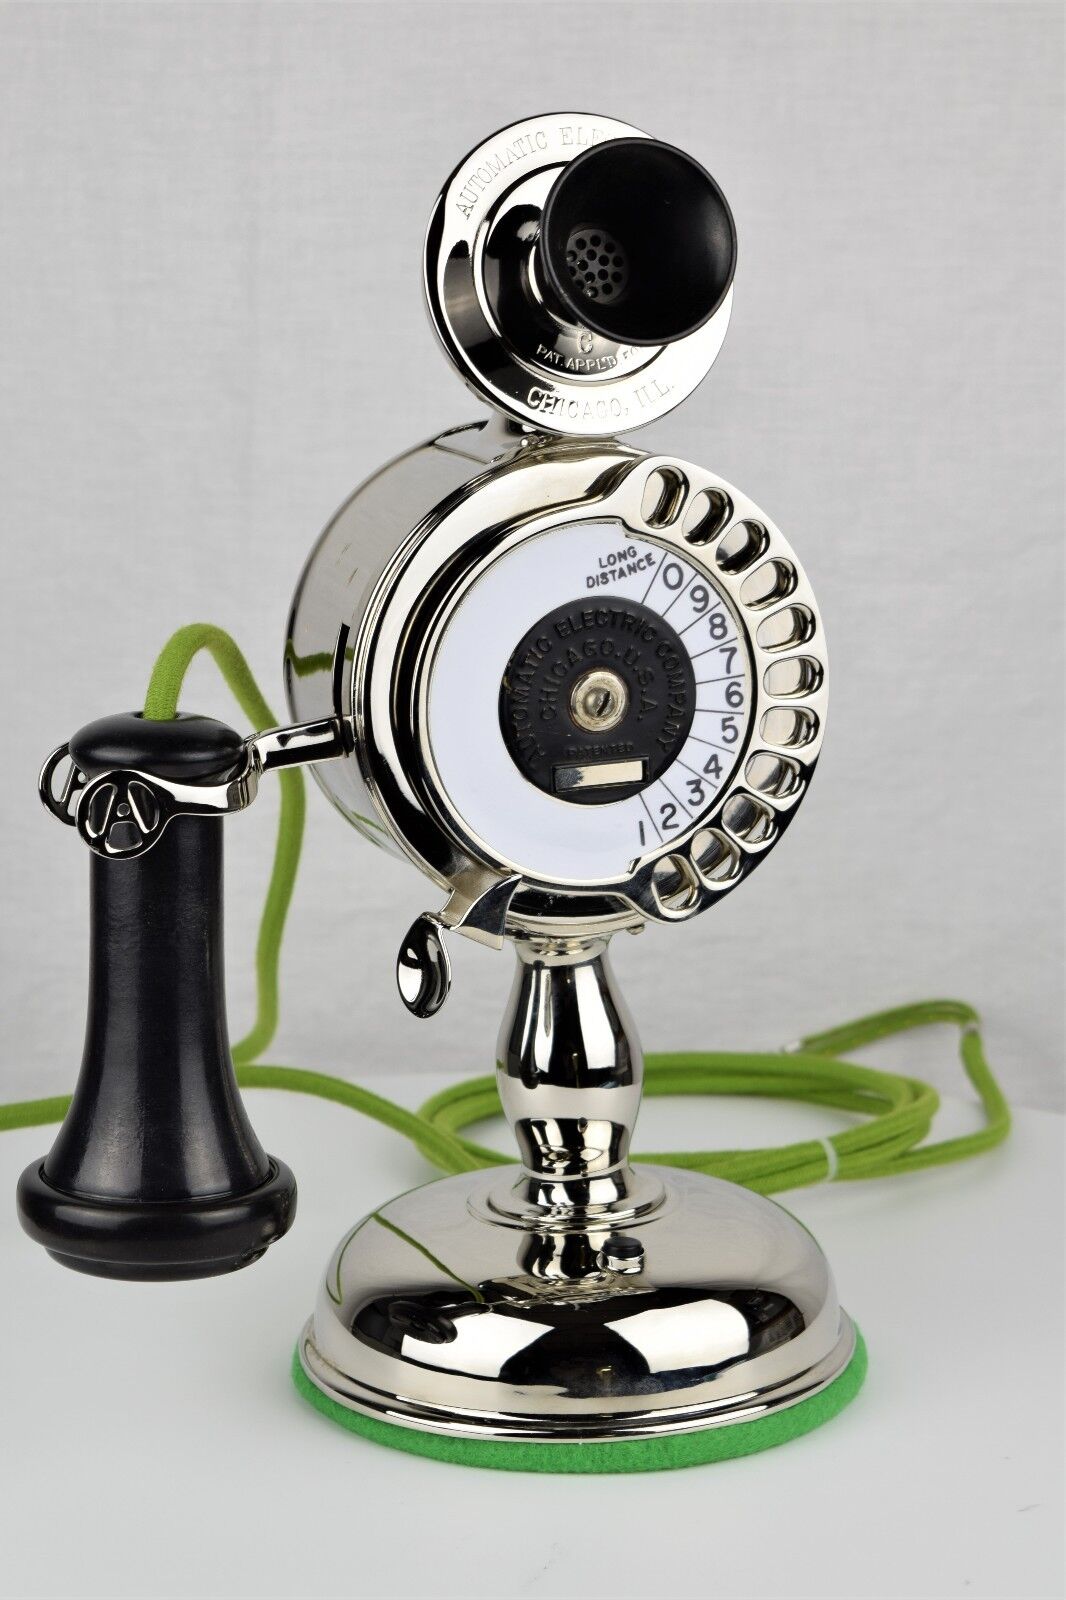 Ultra RARE Vintage Antique Strowger Potbelly Dial Candlestick - Circa 1905